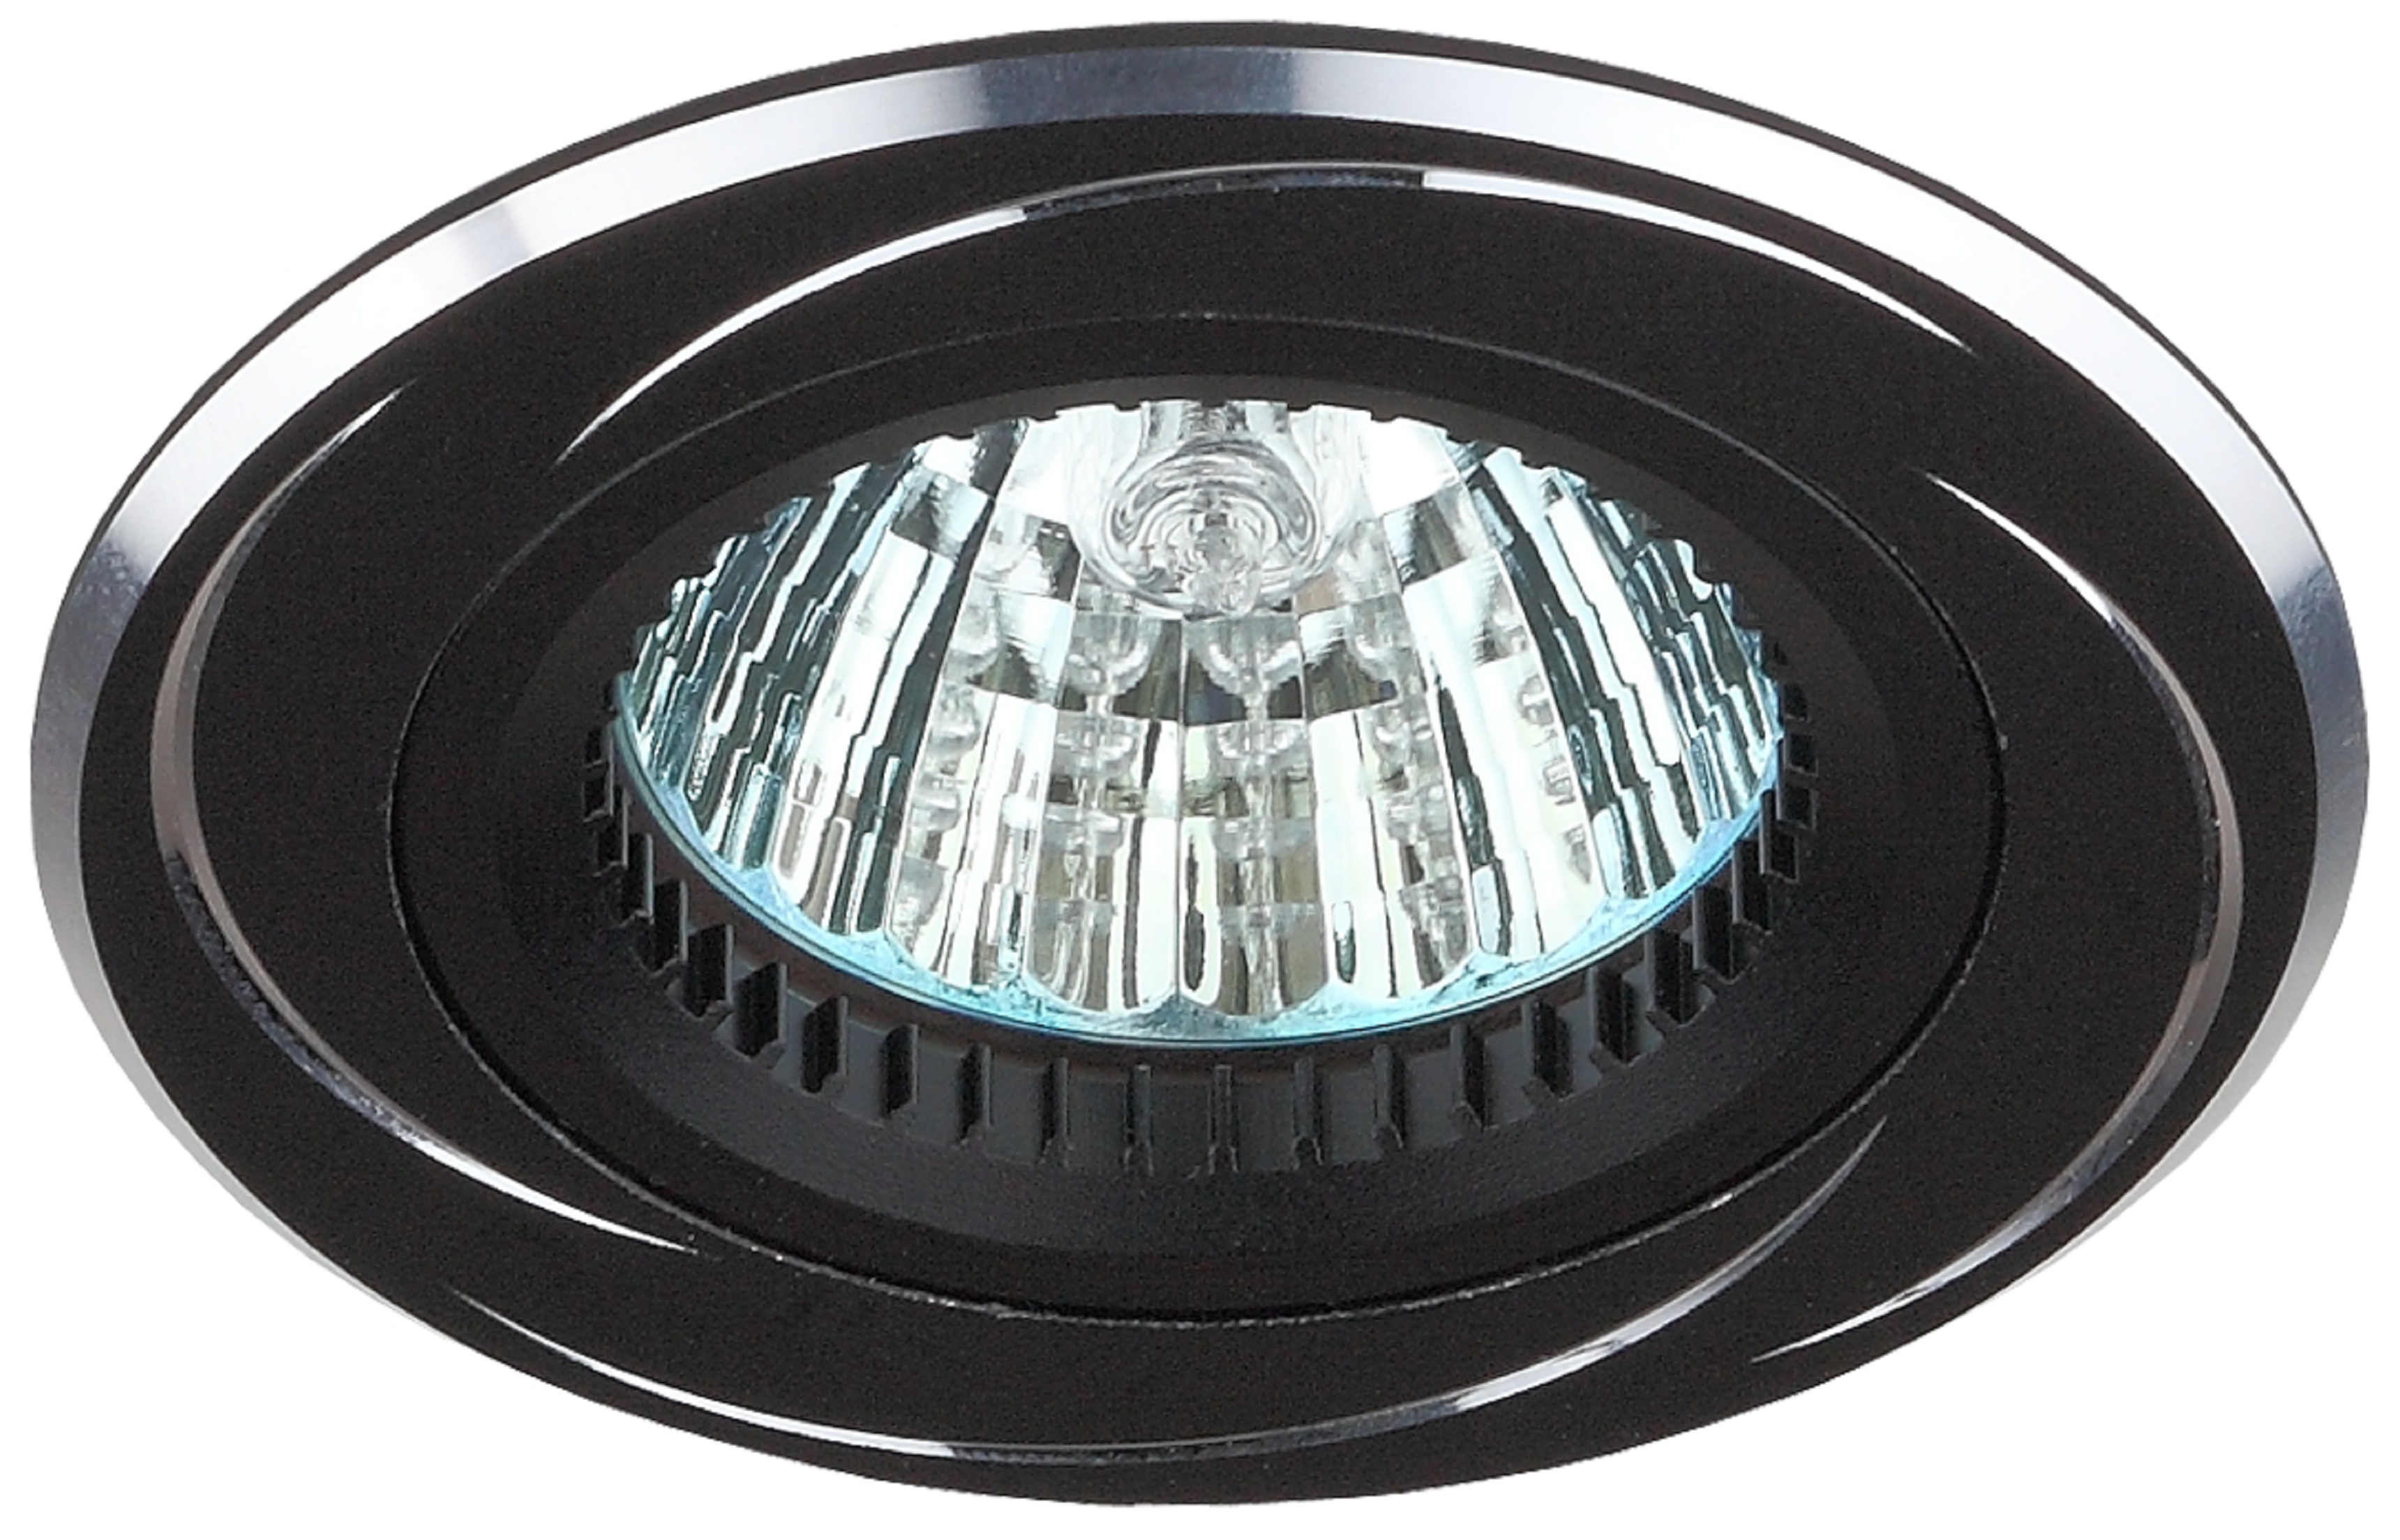 Встраиваемый светильник алюминиевый ЭРА  KL34 AL/BK/1 поворотный MR16 12V 50W черный